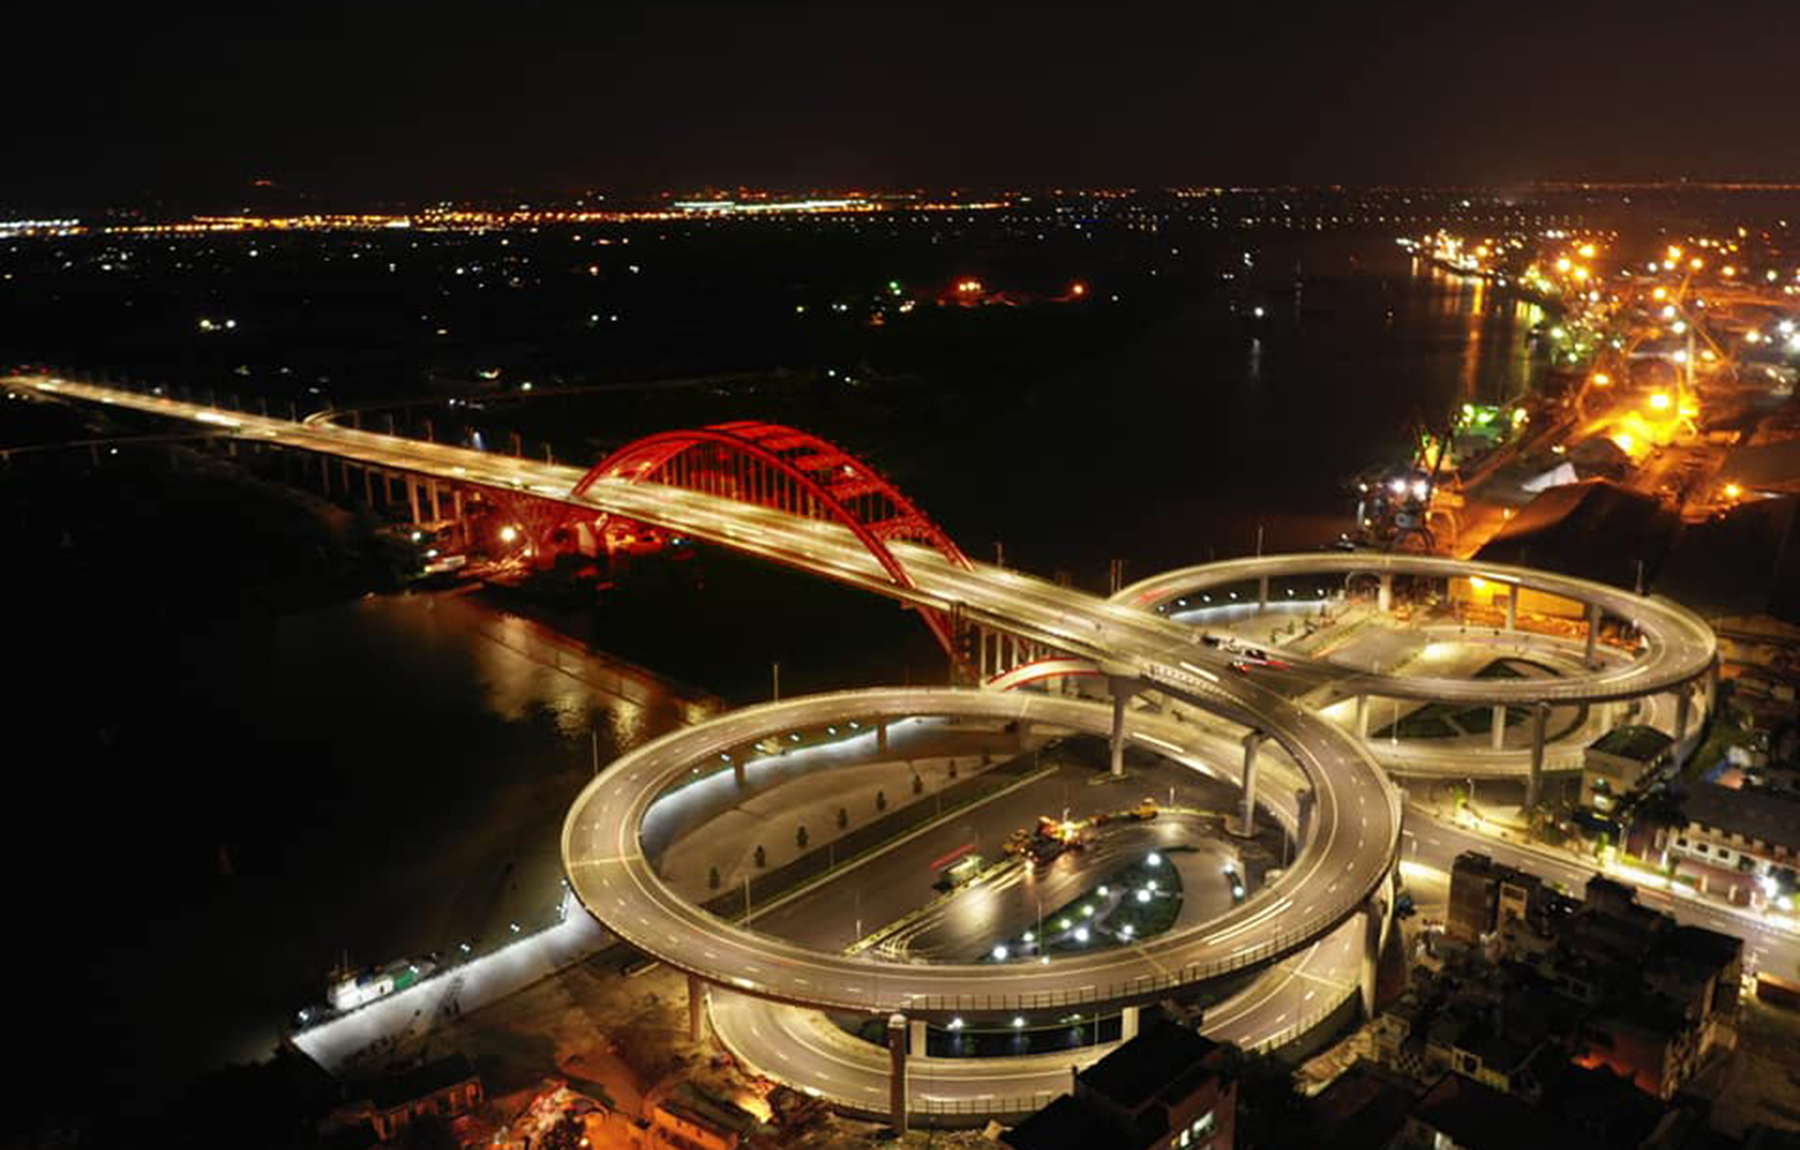 Cầu Hoàng Văn Thụ - Cây cầu mang hình dáng cánh chim biển Hải Phòng